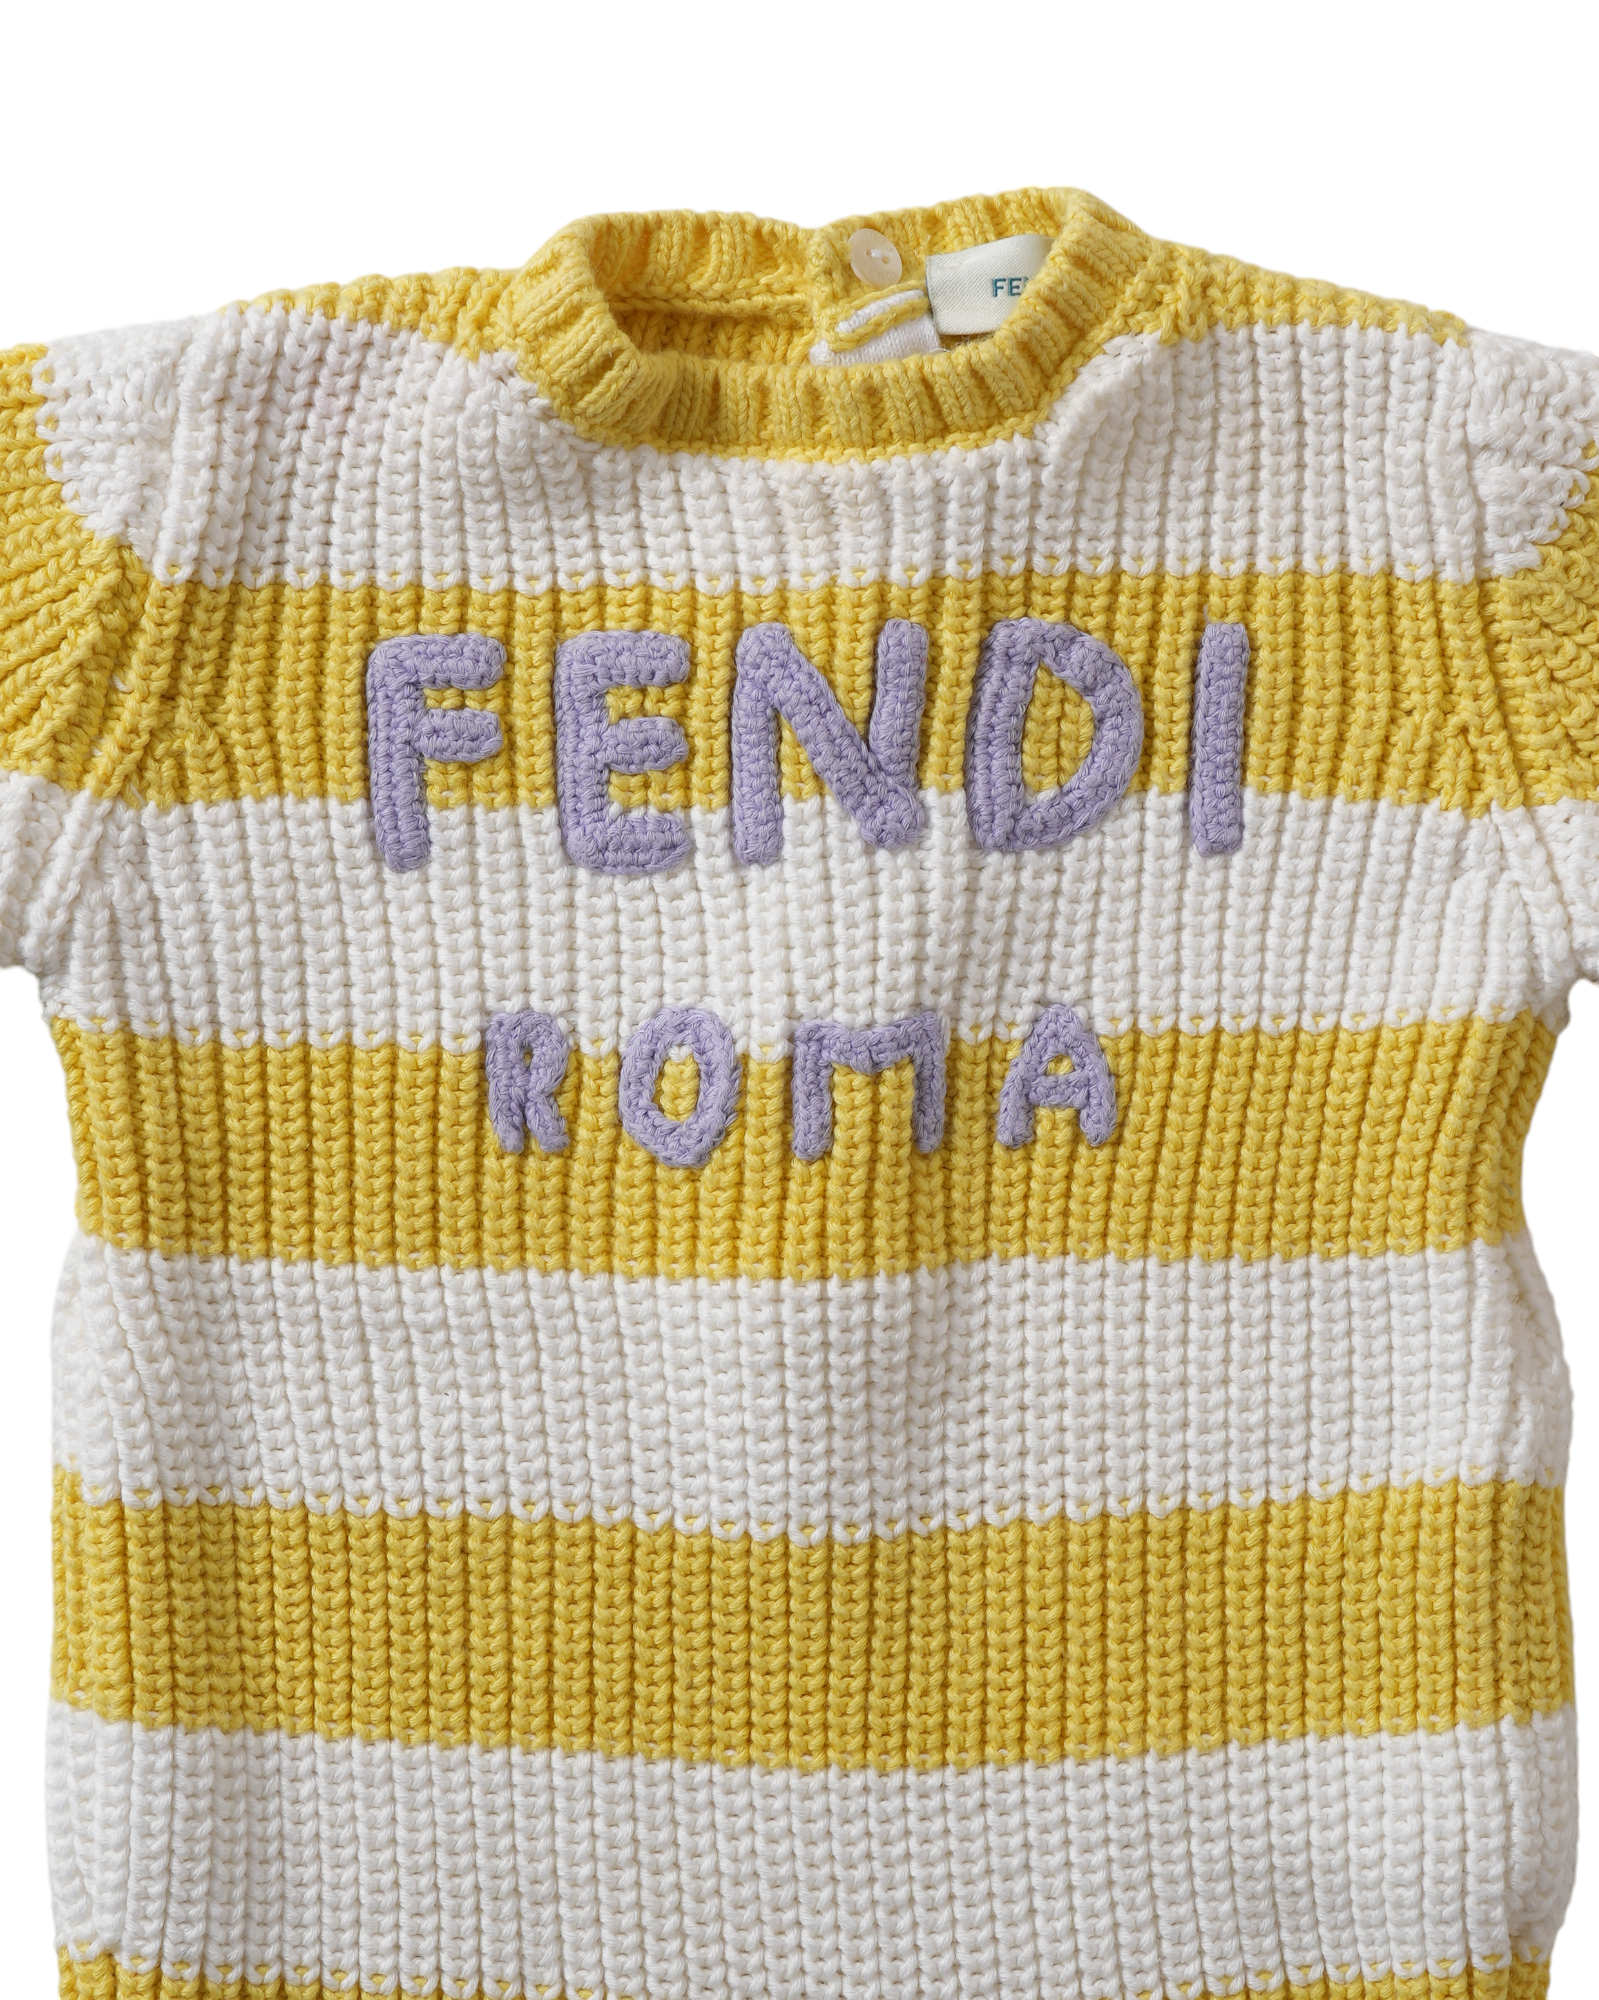 New Fendi Yellow & White Stripe Onesie